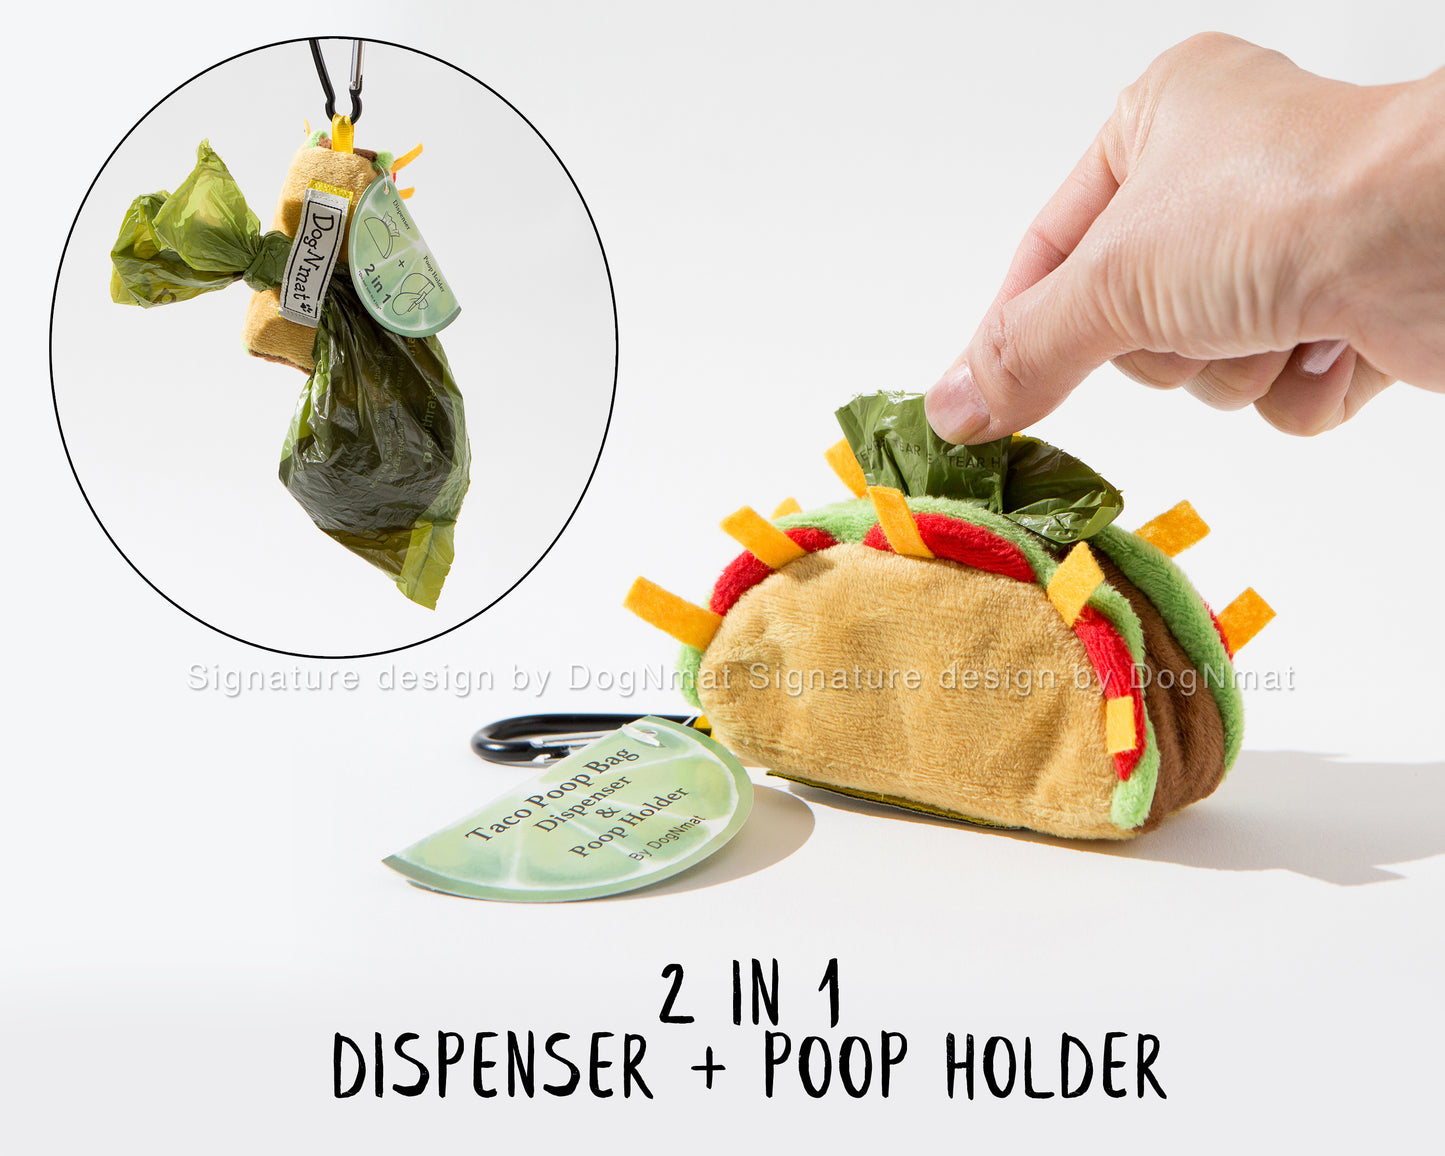 Taco Poop Bag Dispenser and Poop Holder - 2 in 1 waste bag dispenser with poop holder